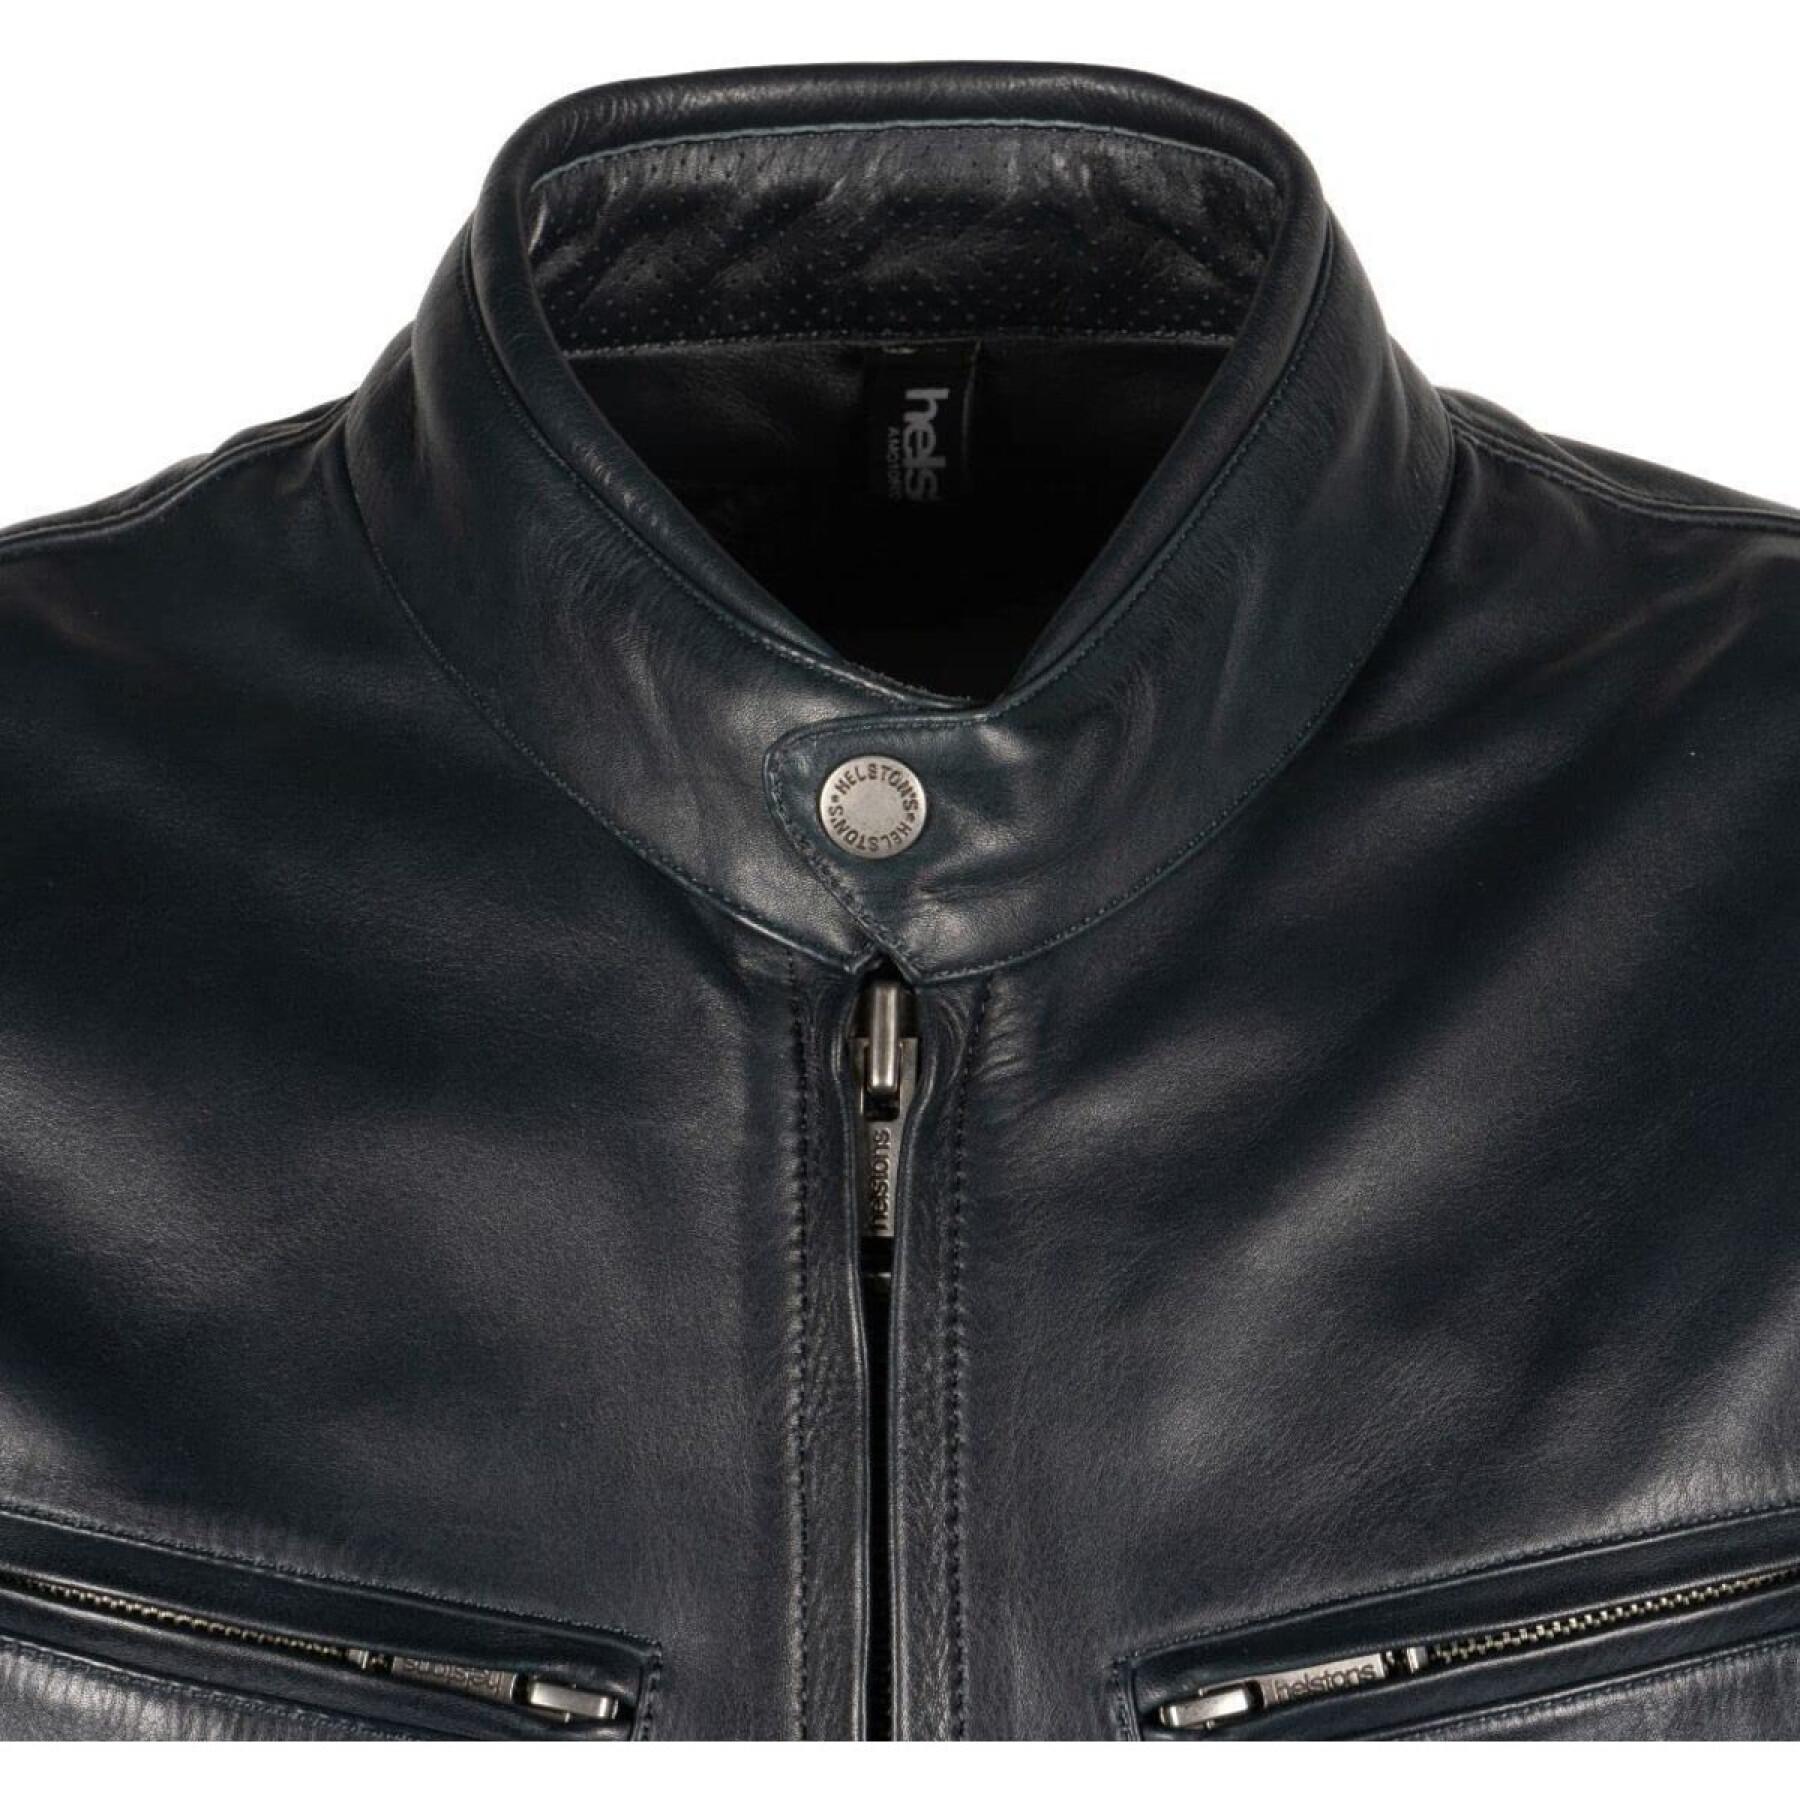 Aniline motorcycle leather jacket Helstons race